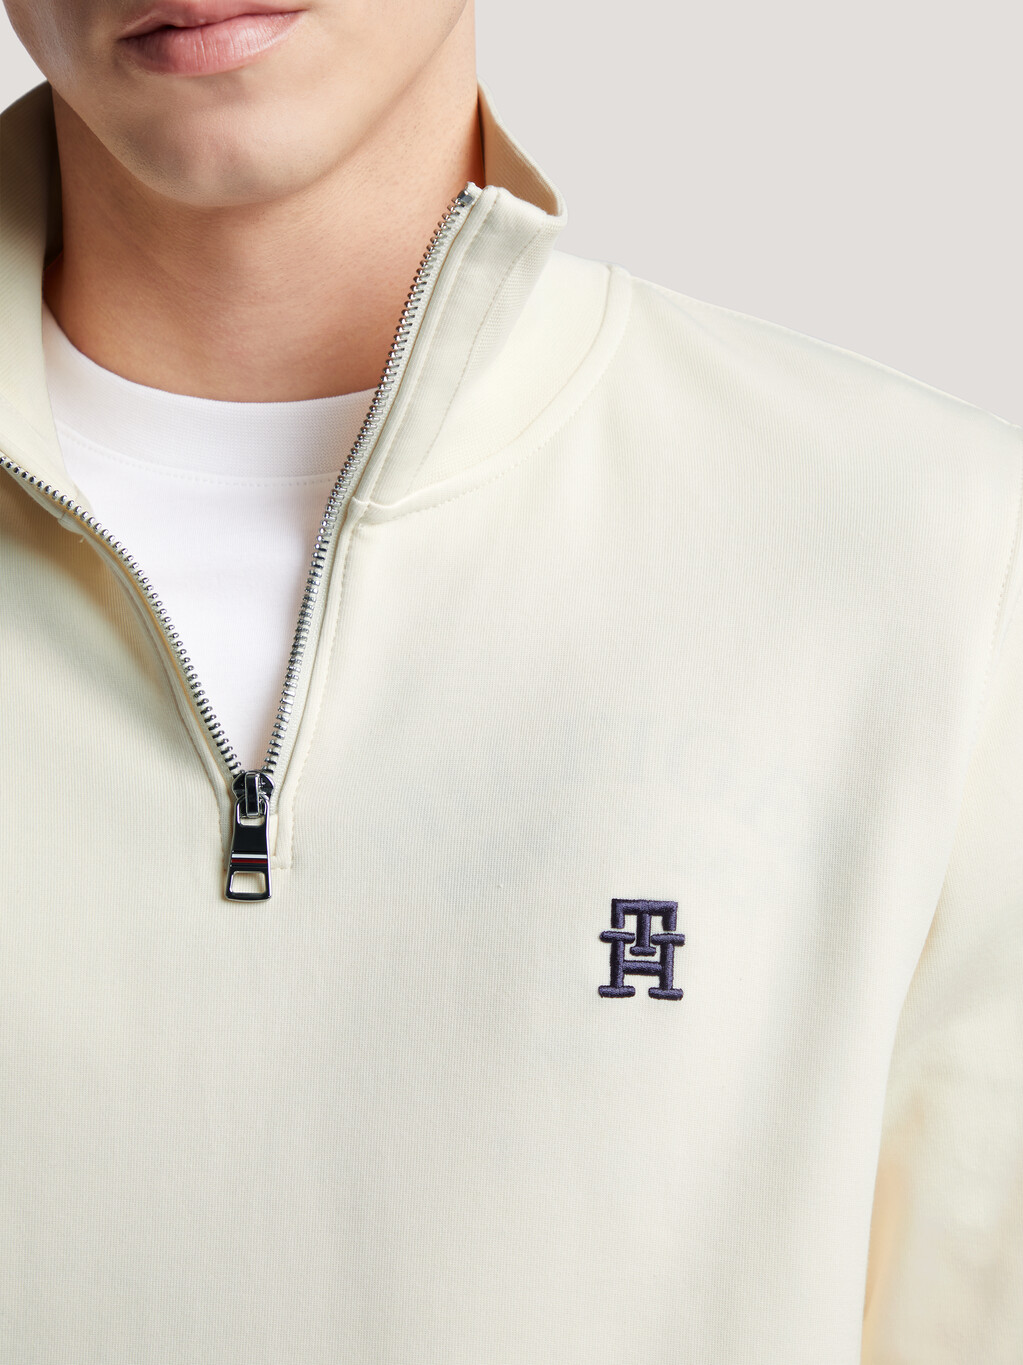 TH Monogram 立領運動衫, Calico, hi-res